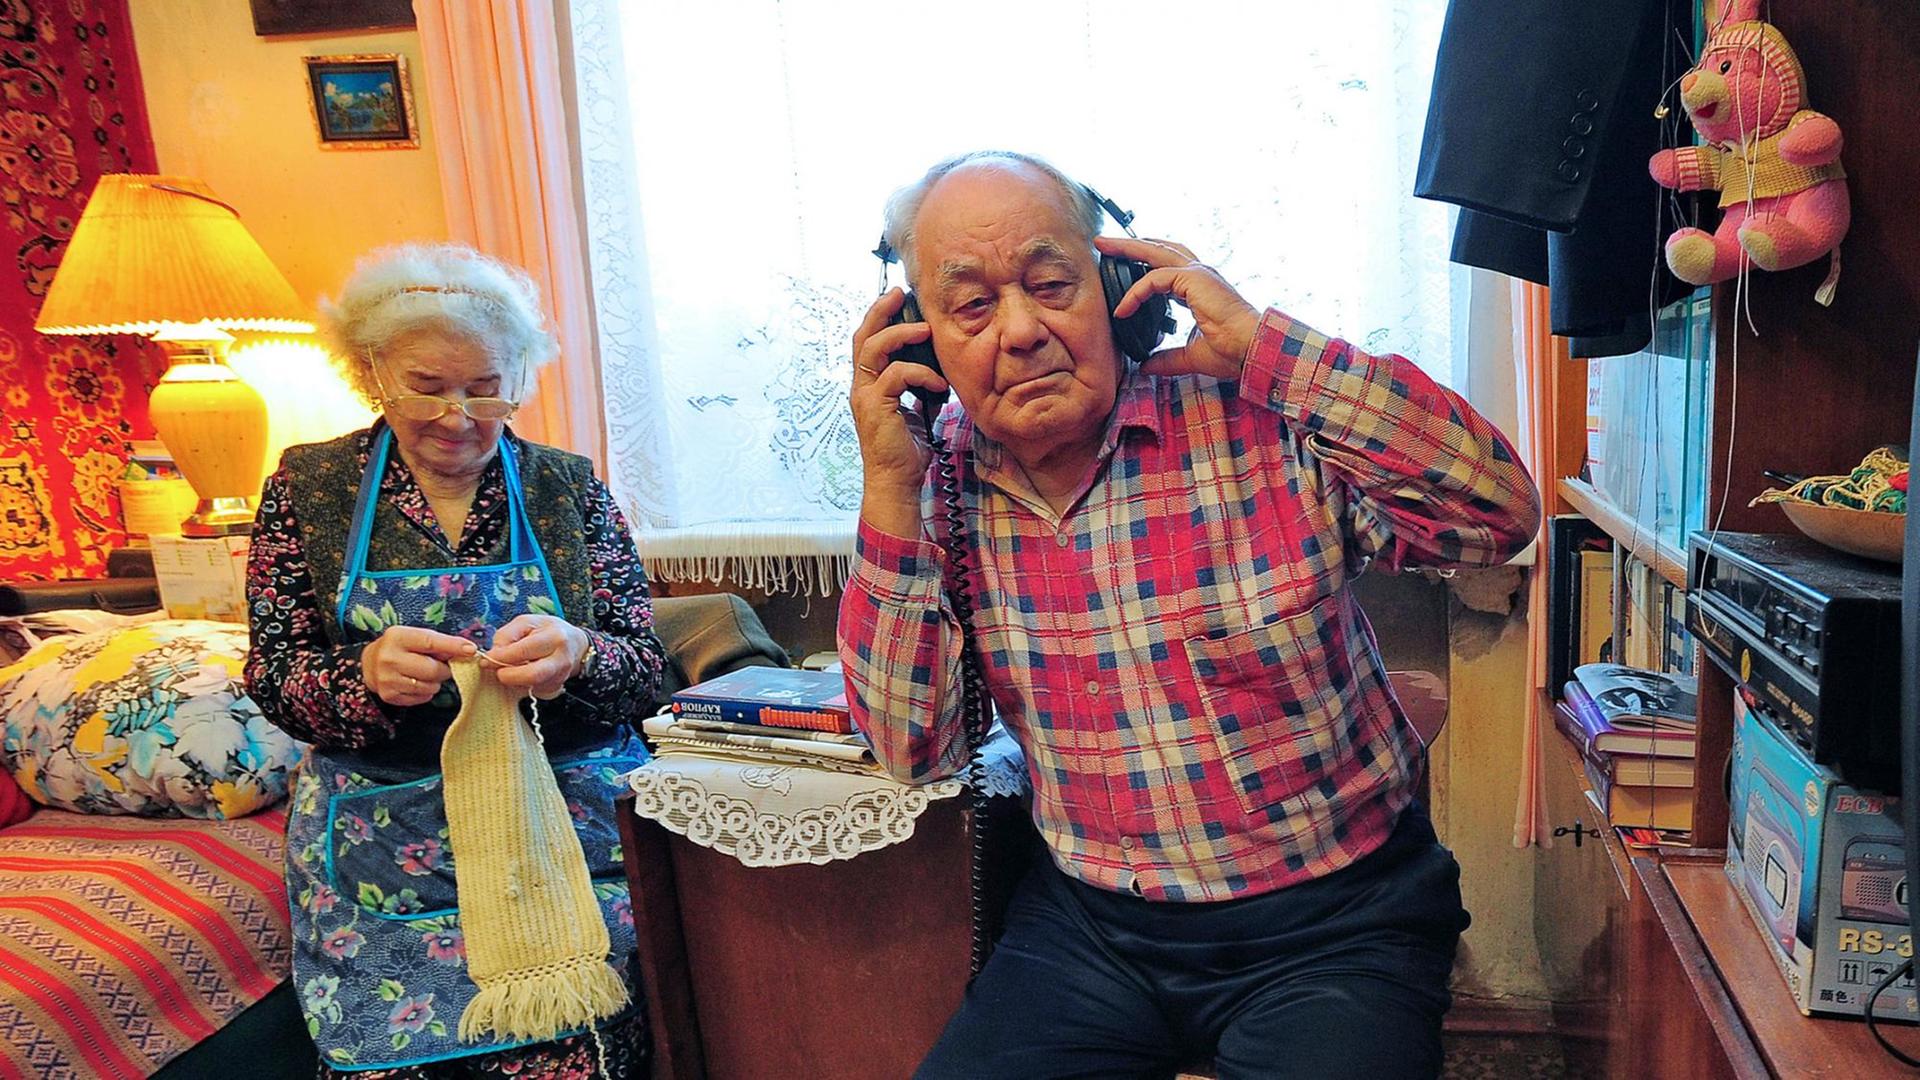 Ein älteres Ehepar in seinem Wohnzimmer: Sie strickt, er hat einen Kopfhörer auf.